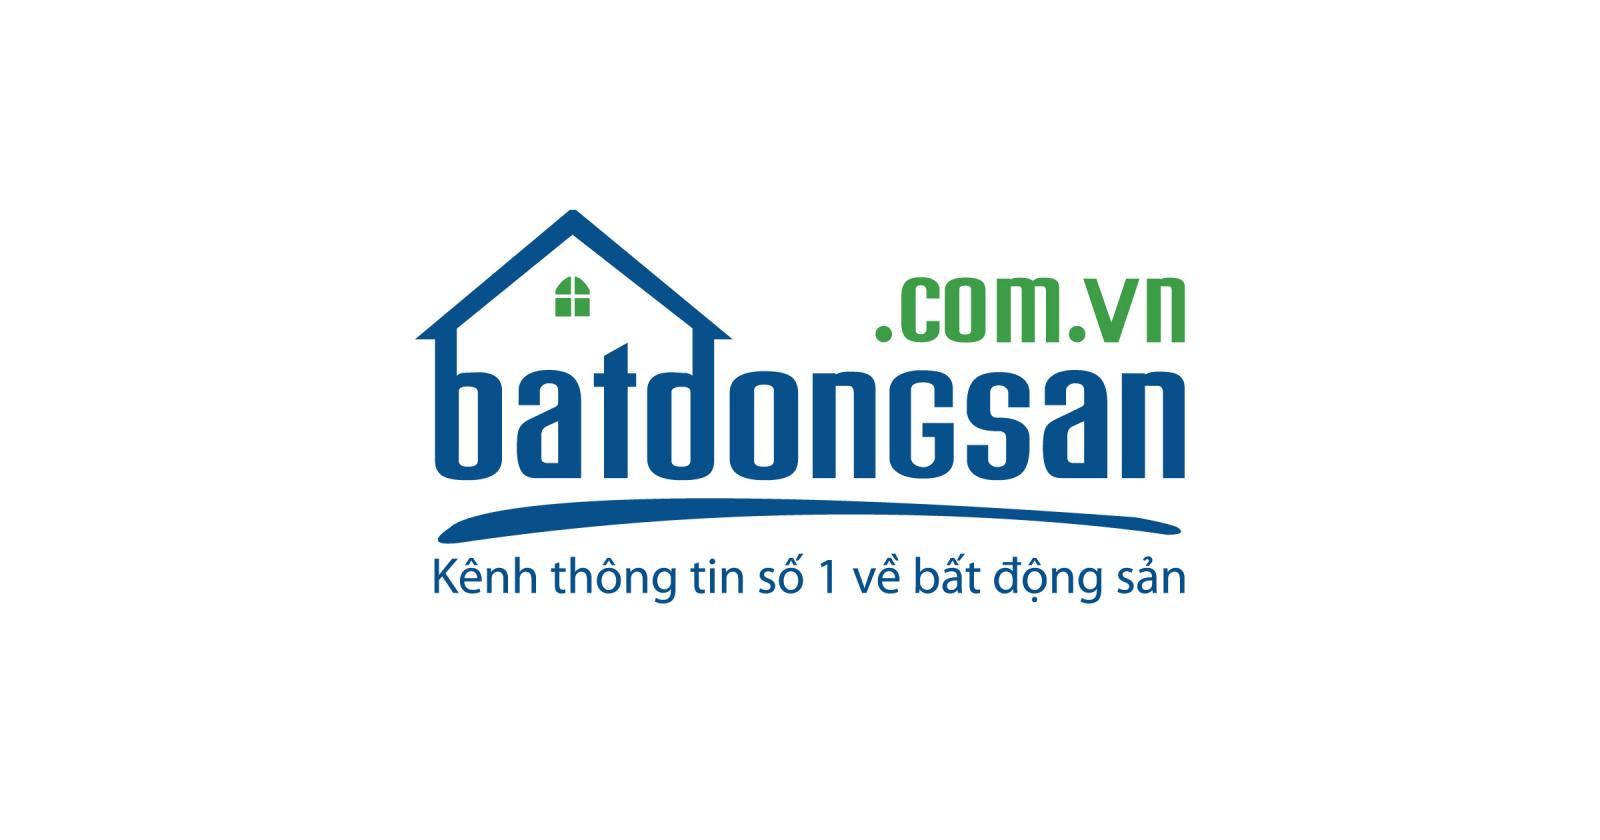 Bạn đang thử nghiệm website với nhận diện mới của Batdongsan.com.vn​